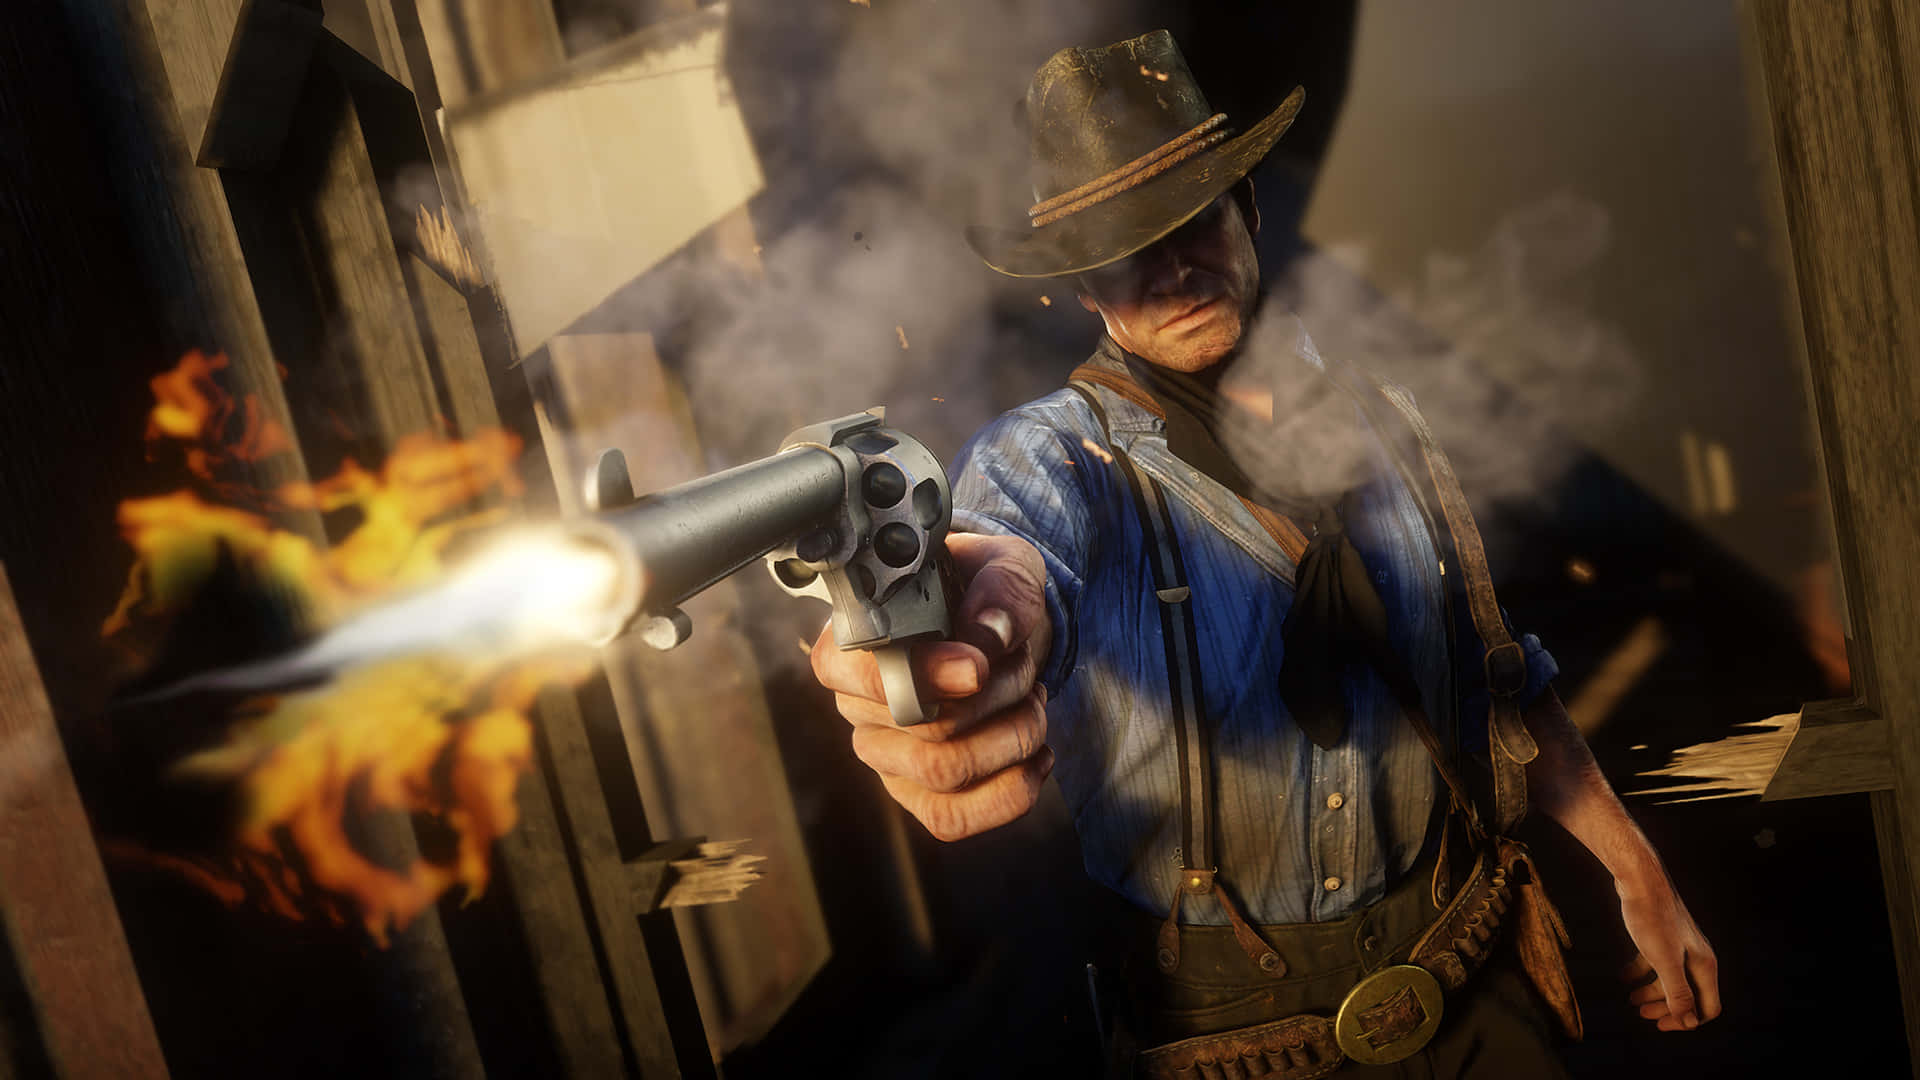 Participaen Una Épica Batalla Del Salvaje Oeste Con Red Dead Redemption 2 Full Hd. Fondo de pantalla